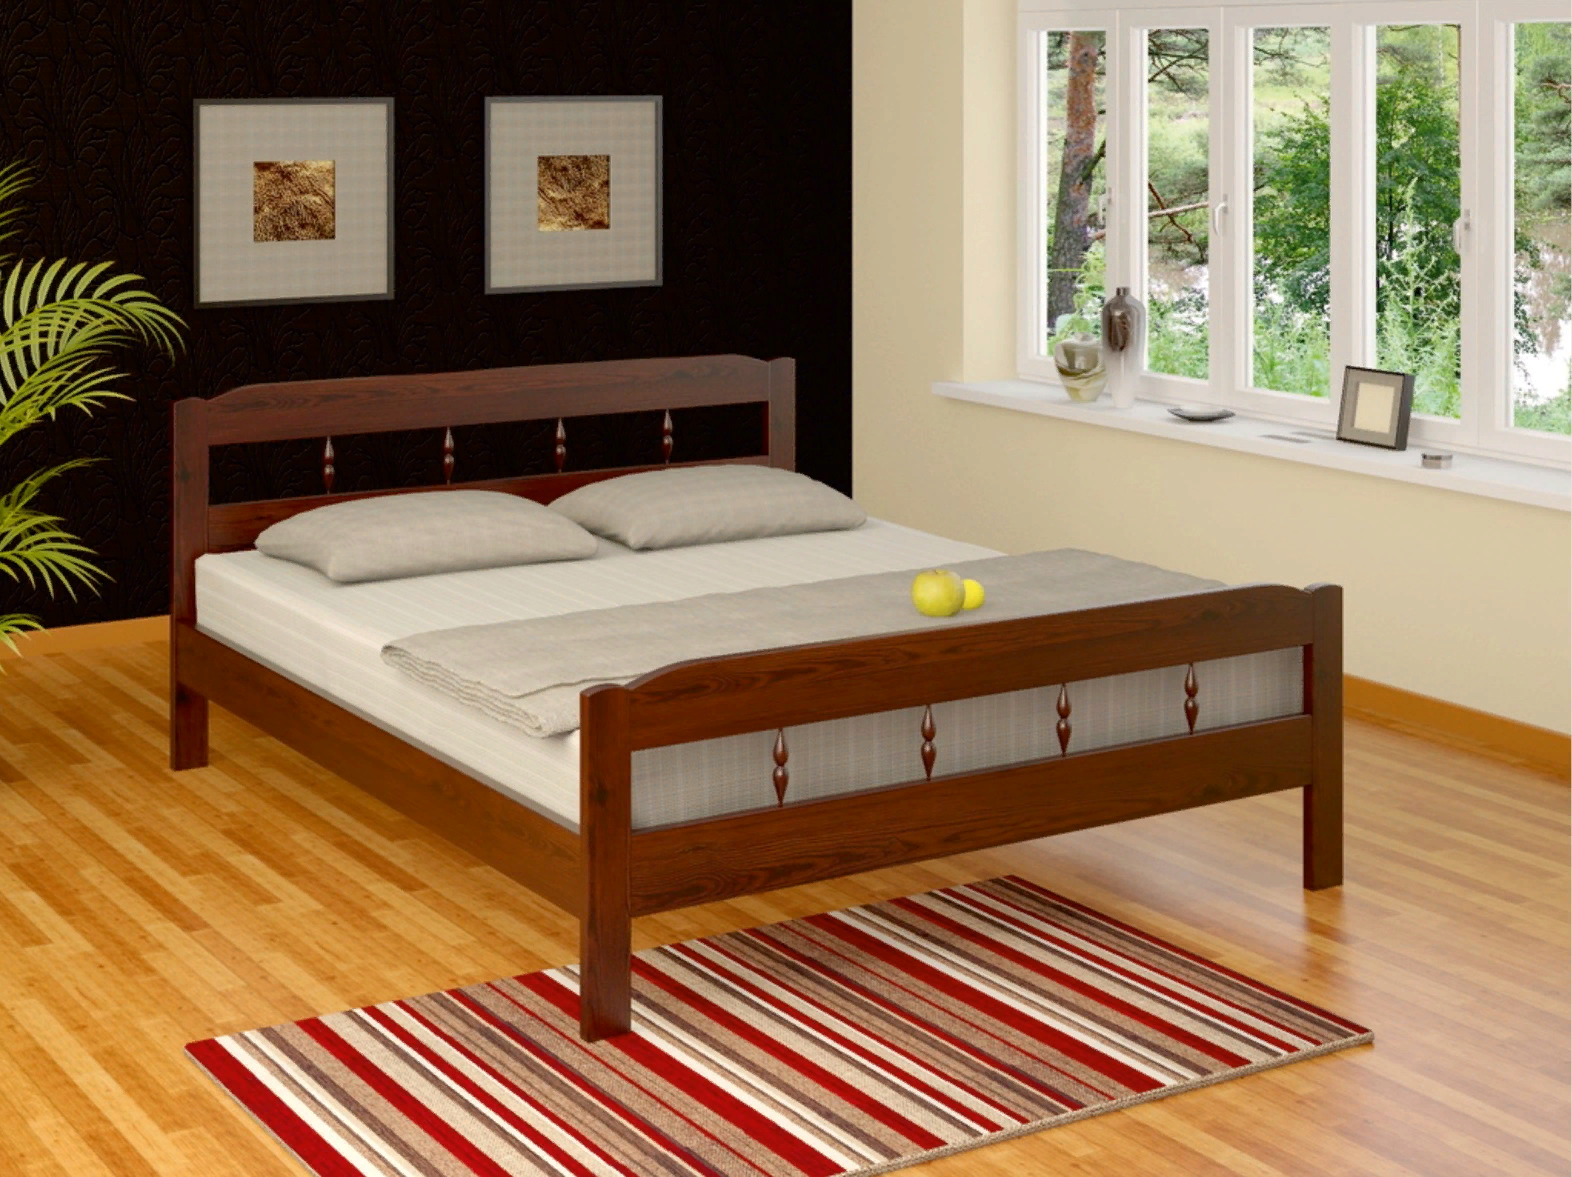 Купить деревянную кровать недорого. Кровать Эра массив. Кровать из массива дерева. Деревянные кровати из массива. Кровать массив дерева.